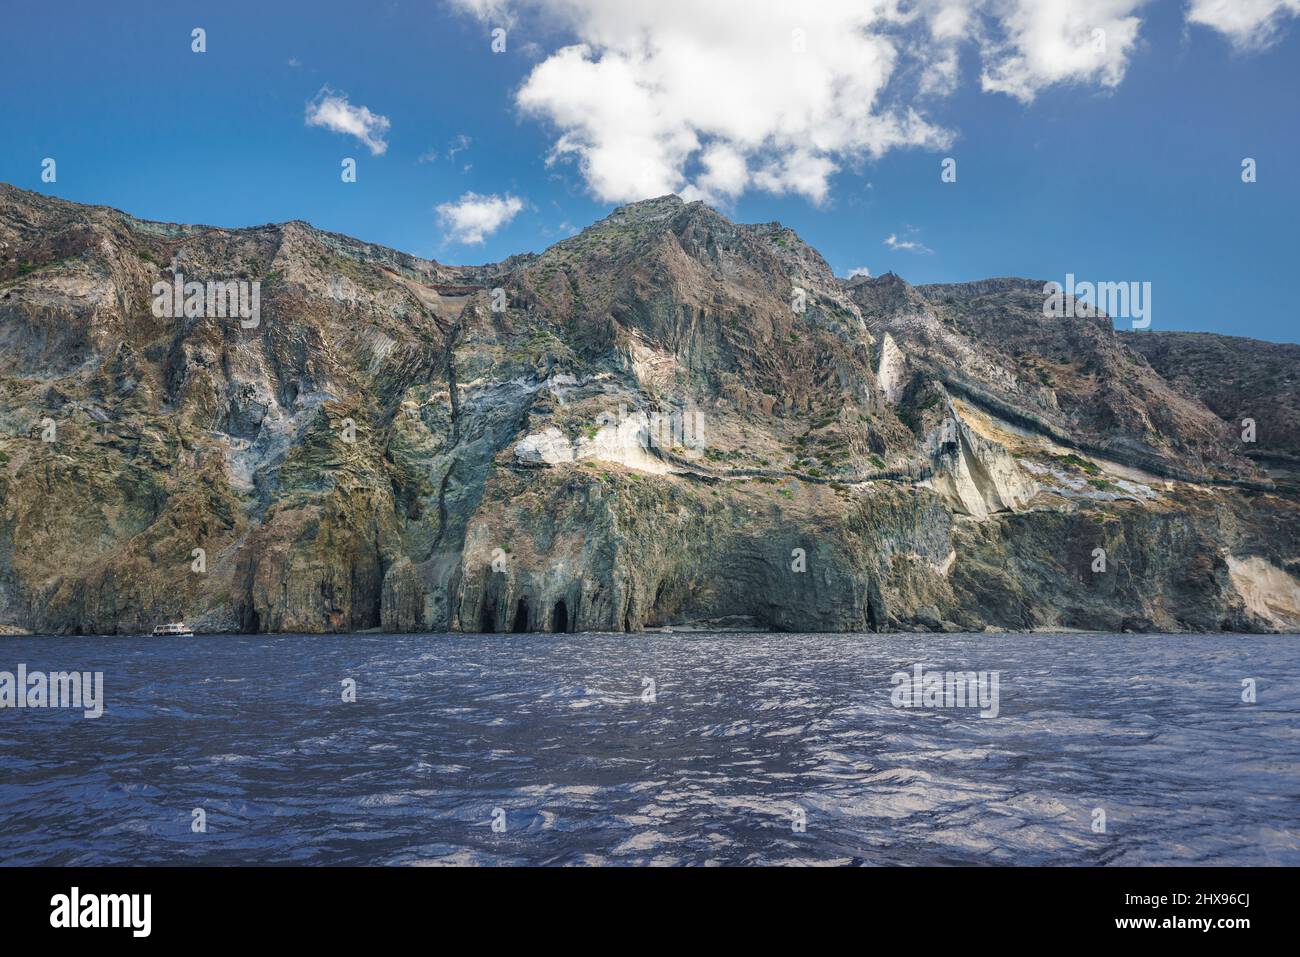 Acantilado de la isla PANTELLERIA en el mar mediterráneo vista en barco. Sicilia, italia. Foto de stock